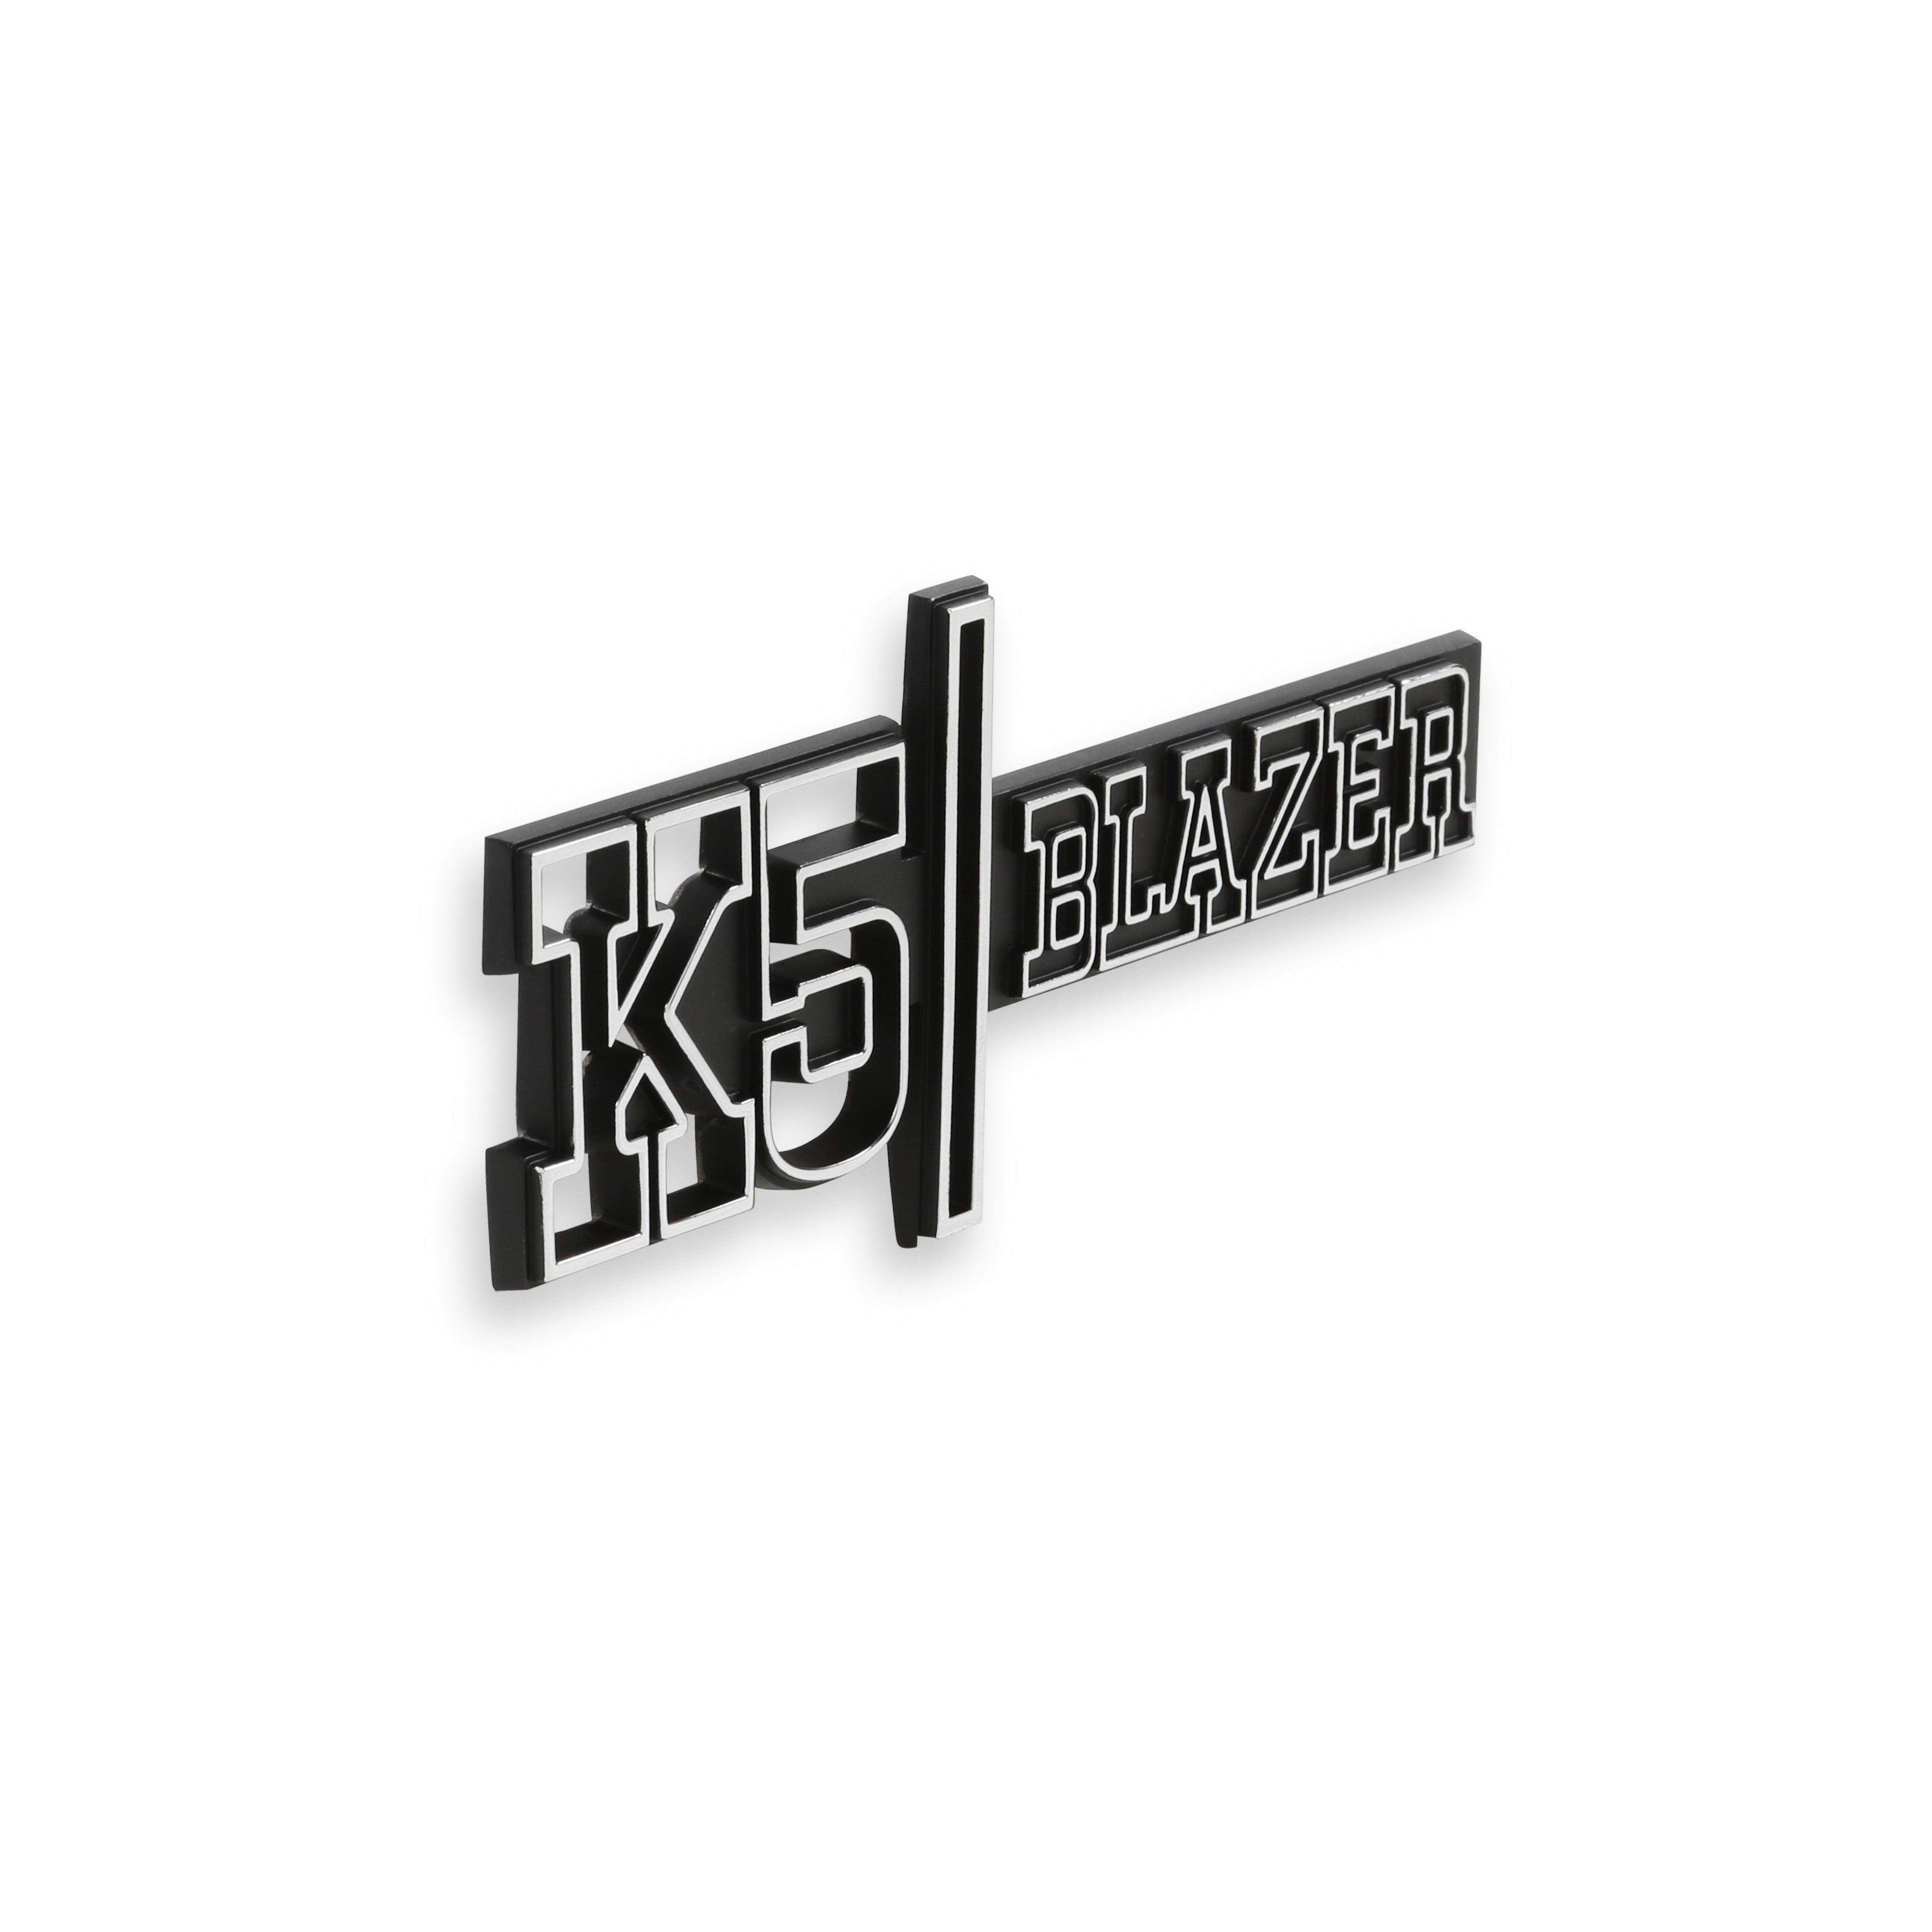 BROTHERS K5 Fender Badge Pair - Blazer 4WD pn 04-547